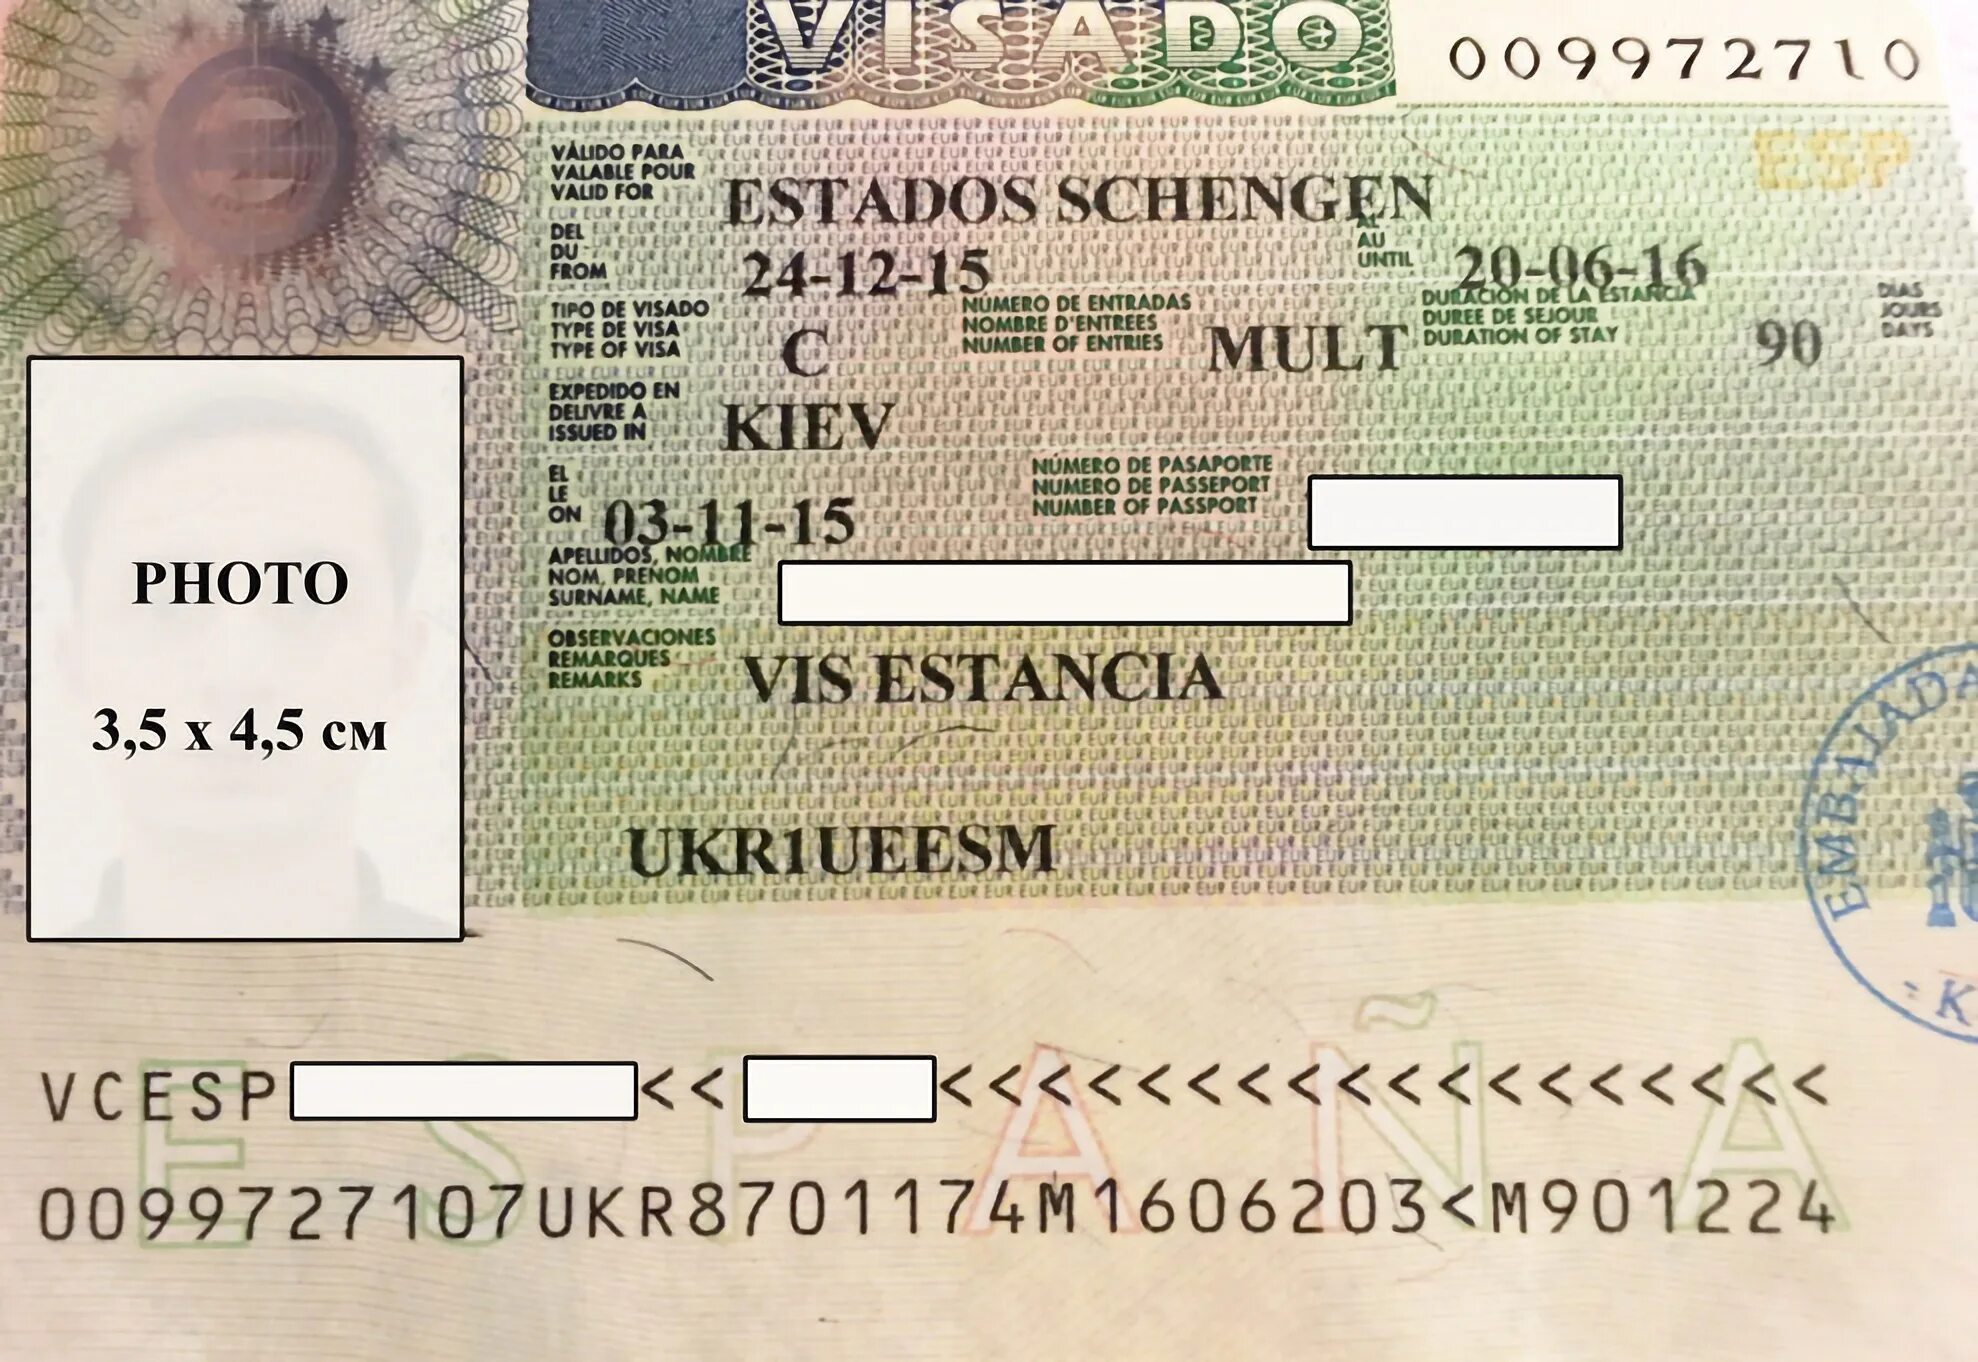 Шенген куда можно. Виза шенген в Испанию. Испанская виза шенген. Учебная виза в Германию. Шенгенская мультивиза испанская.